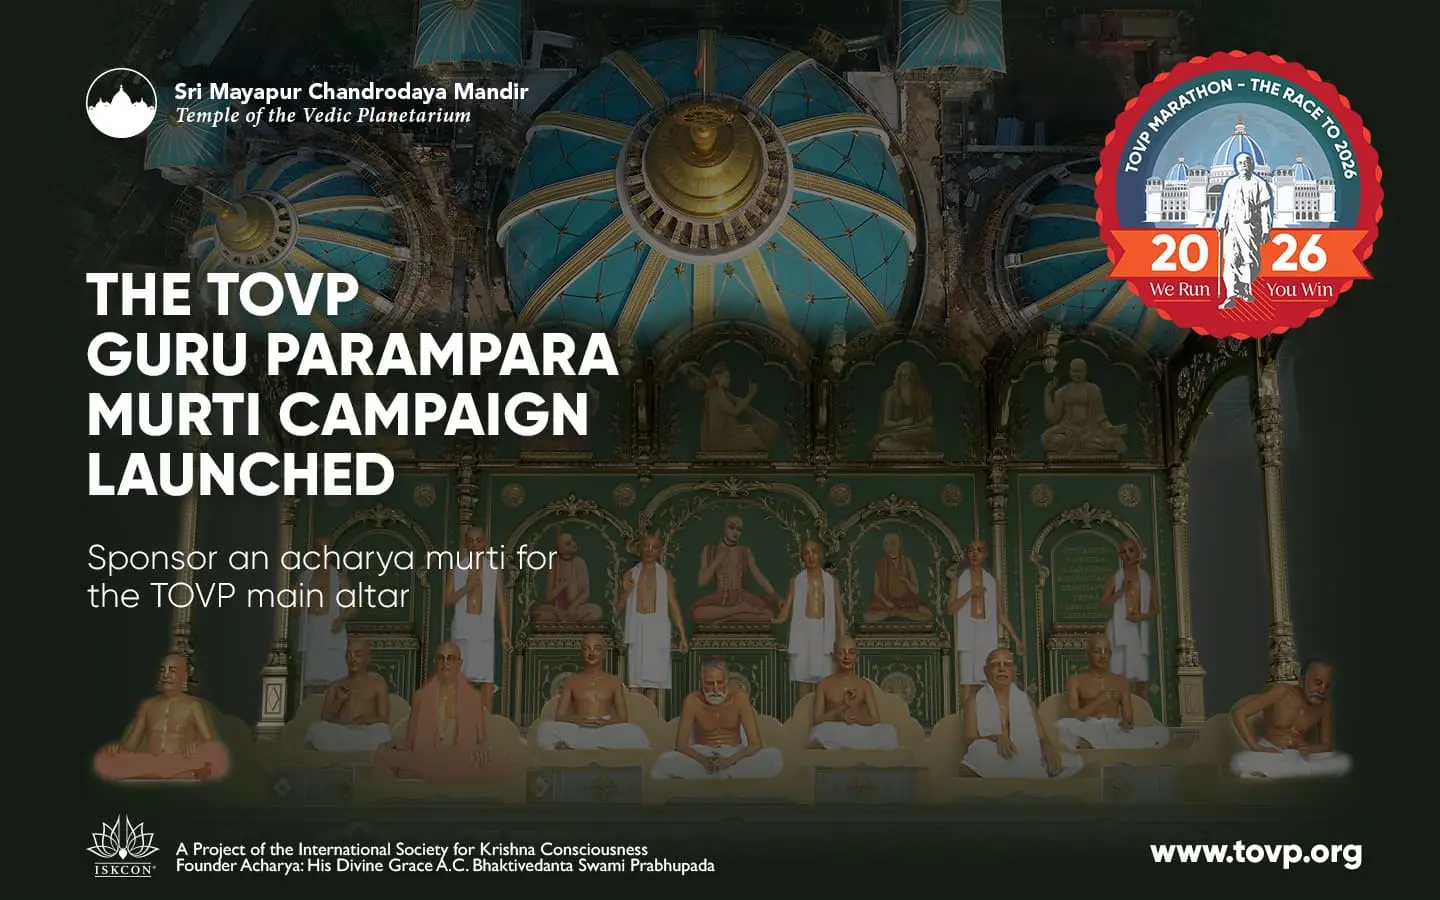 The TOVP Guru Parampara Murti Campaign Launched